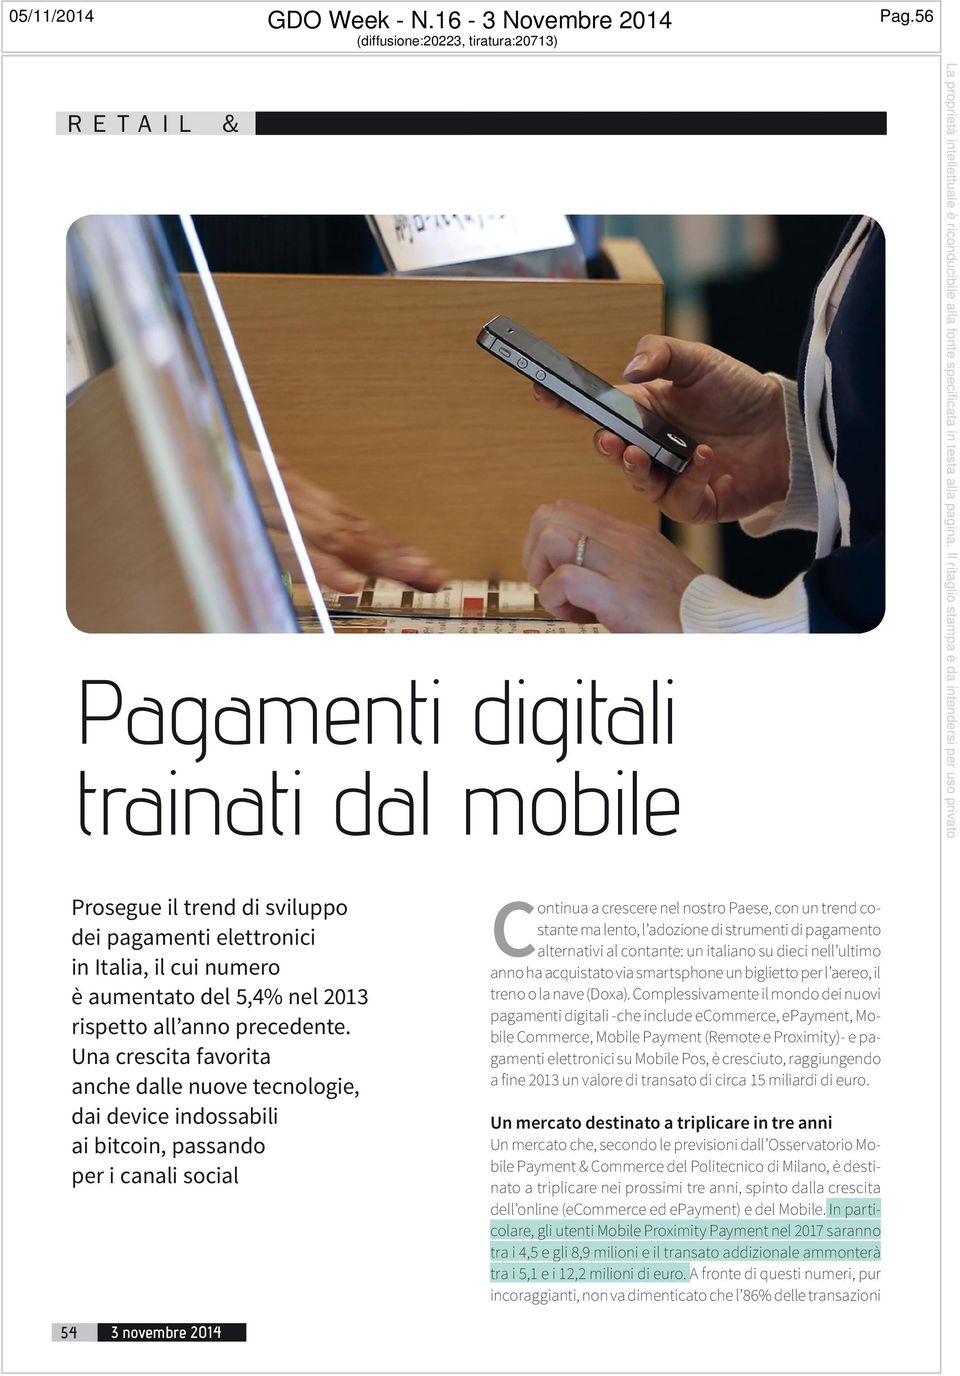 strumenti di pagamento alternativi al contante: un italiano su dieci nell ultimo anno ha acquistato via smartsphone un biglietto per l aereo, il treno o la nave (Doxa).